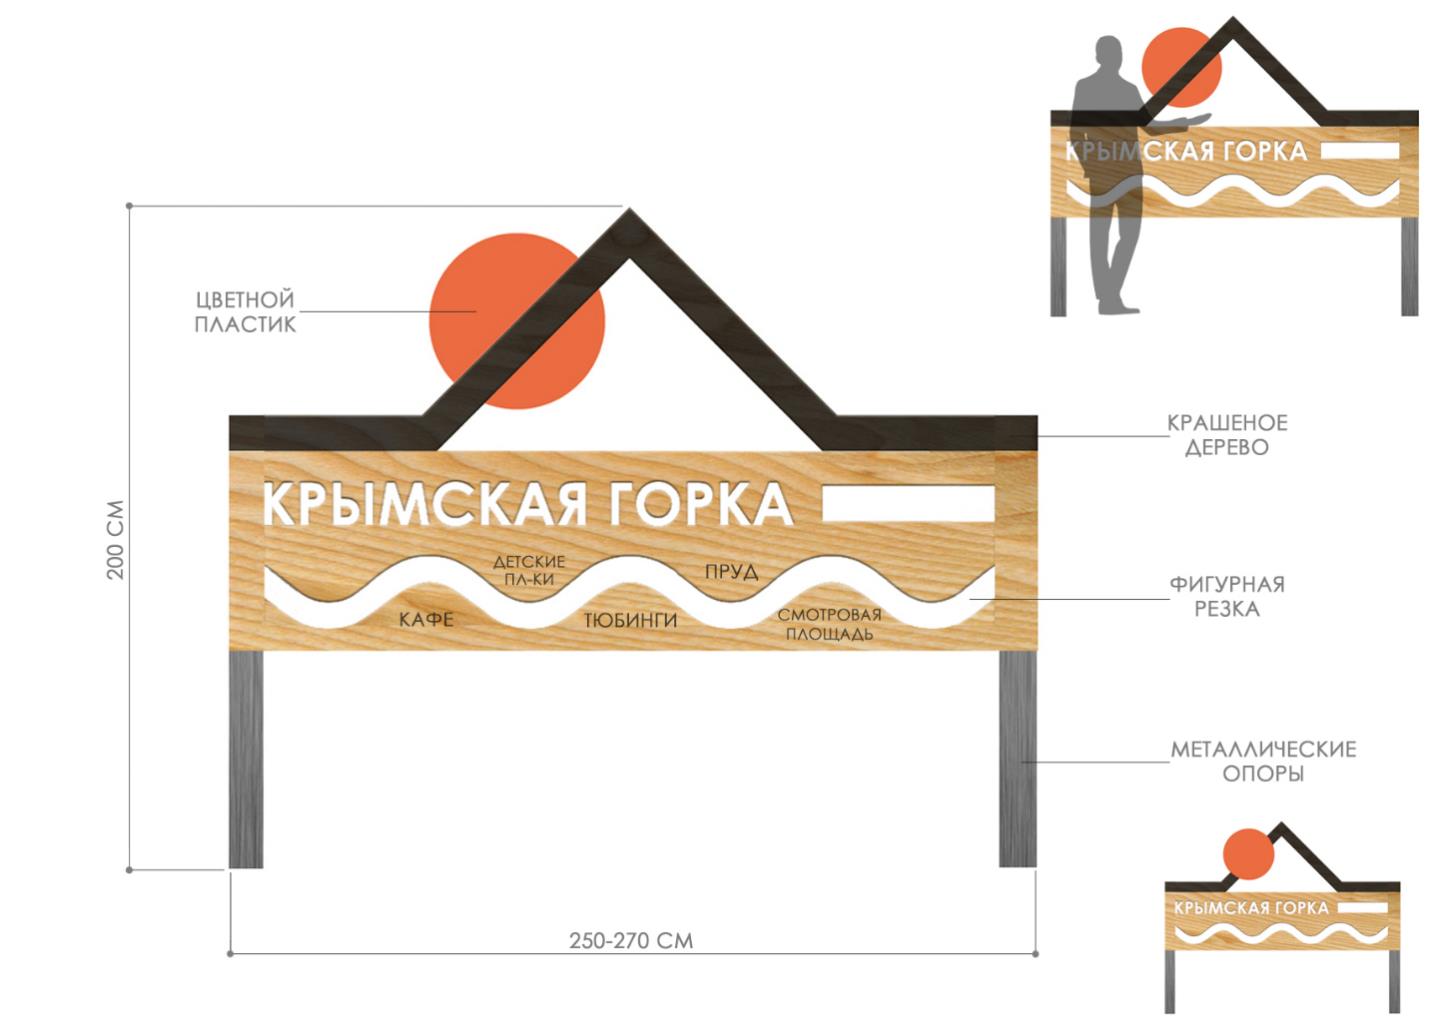 Обновленный парк «Крымская горка» откроют летом 2021 года - фото 1